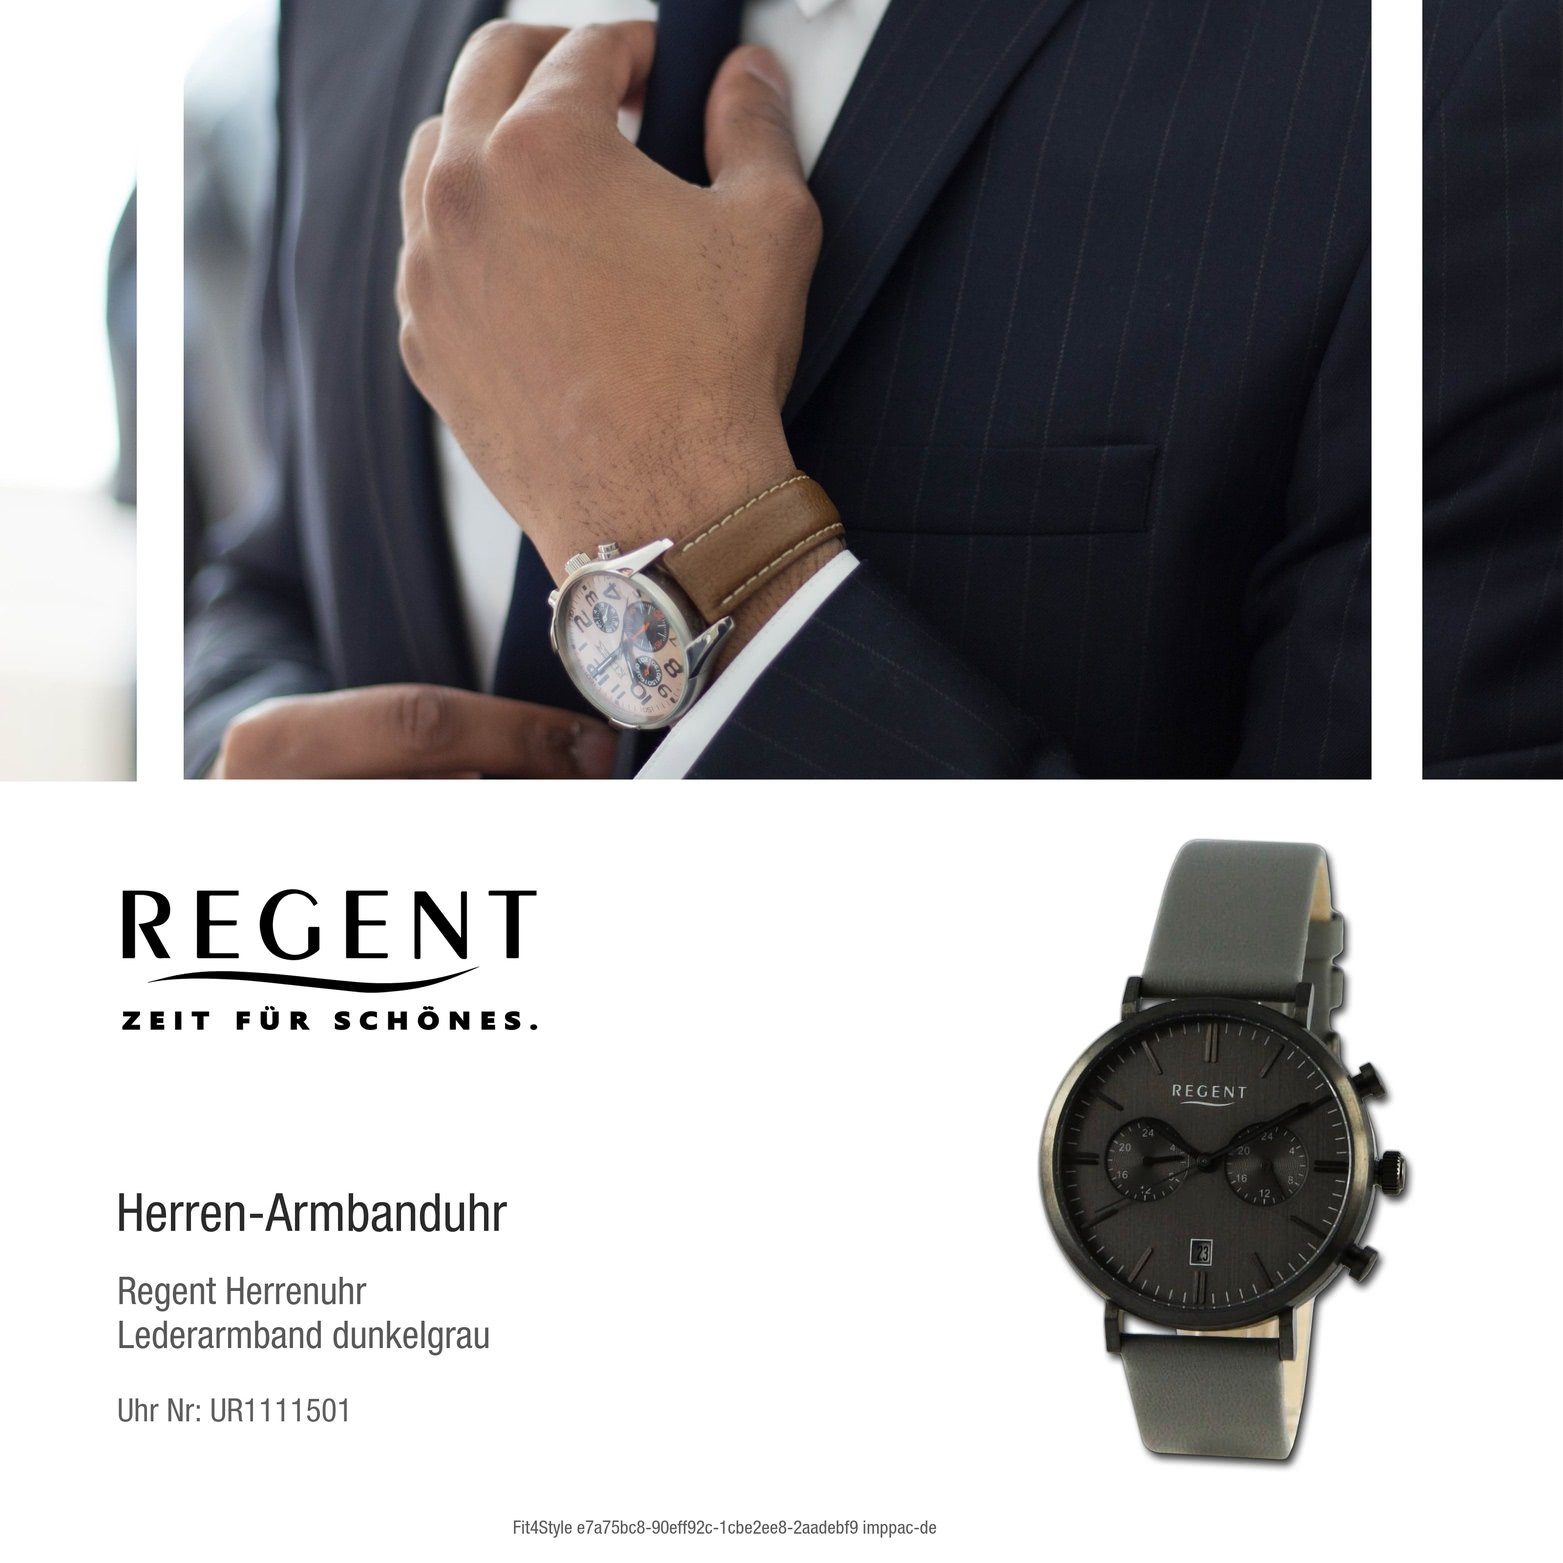 Regent Quarzuhr Regent Herren (ca. Gehäuse, Lederarmband Herrenuhr dunkelgrau, Analog, groß 41mm) rundes Armbanduhr